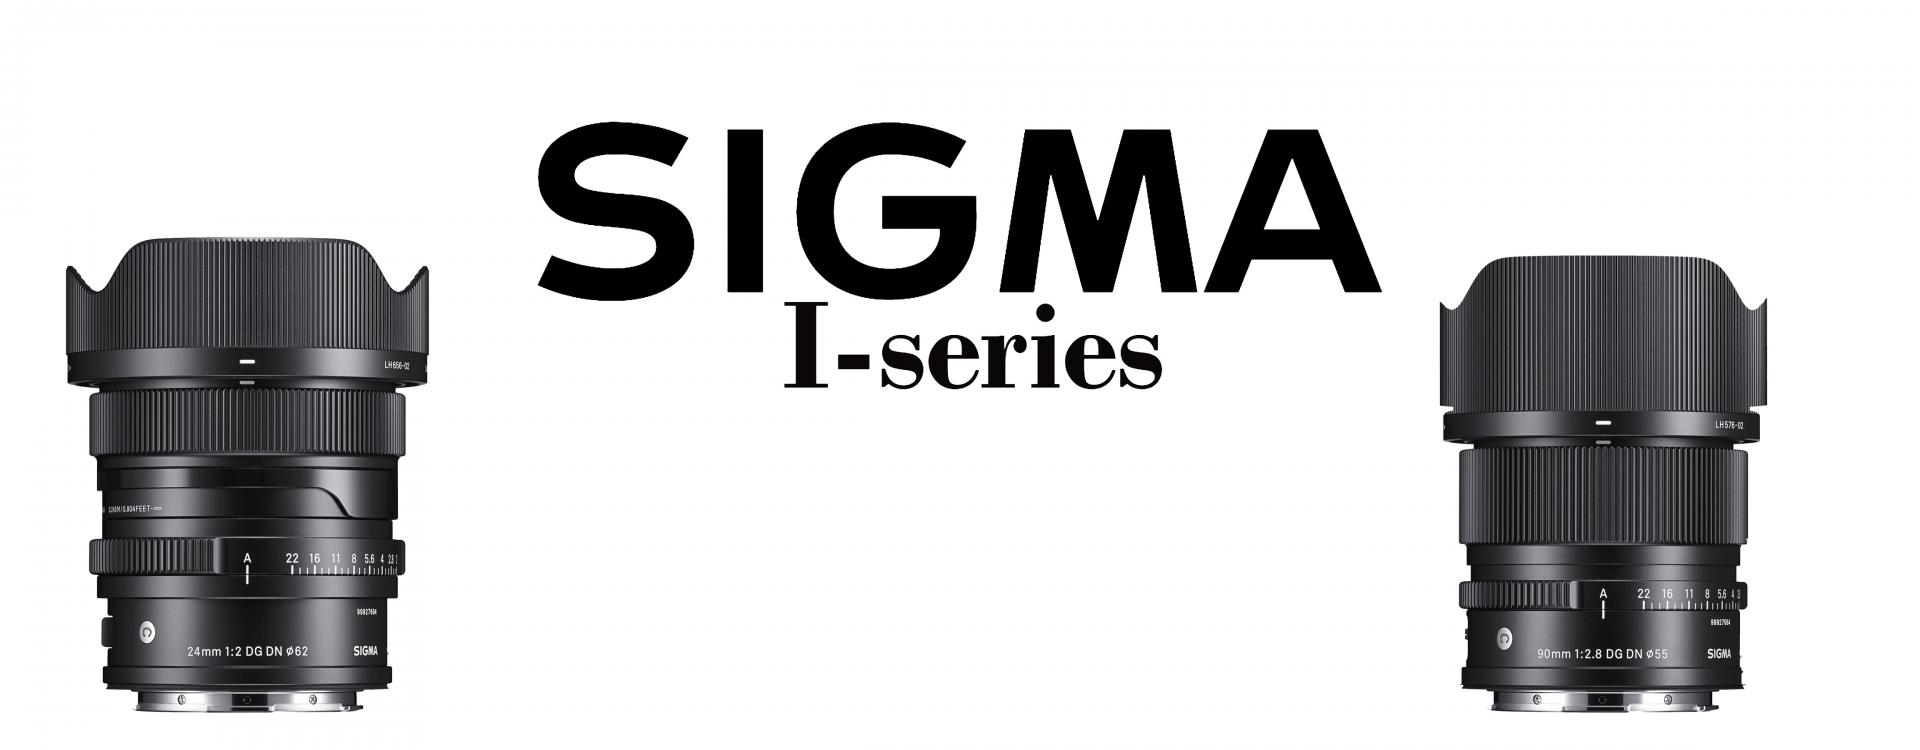 Sigma presenta dos objetivos i-series, lenes DG DN especificamente para cámaras mirrorless de formato completo, de Sony E y montura L para Sigma,